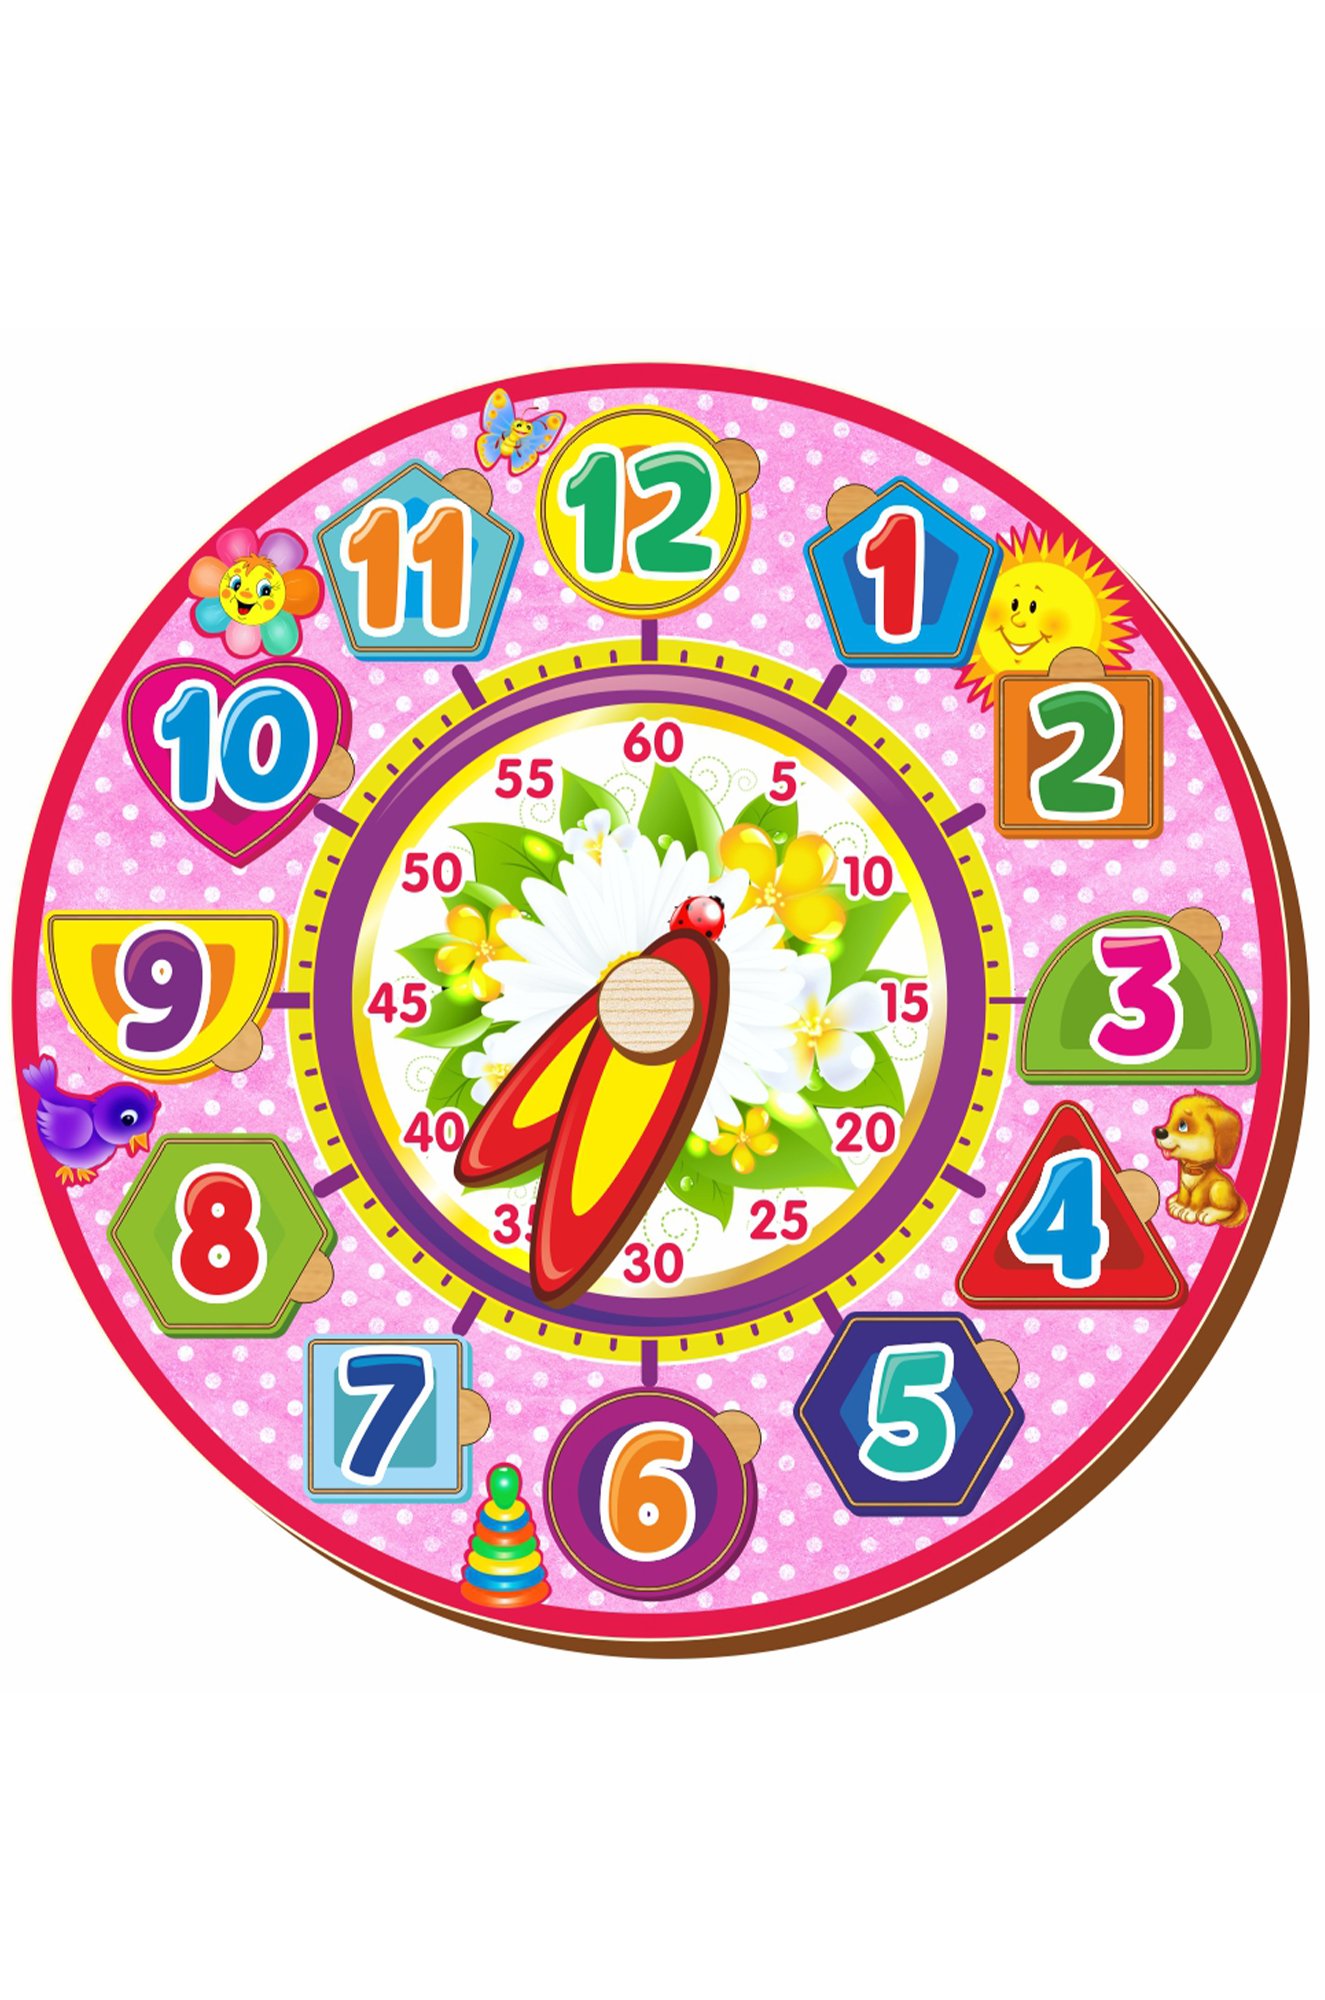 Детский циферблат. Рамка-вкладыш Woodland часы 4 (094204), 12 дет.. Игрушечные часы. Макет часов. Часы обучающие для детей.